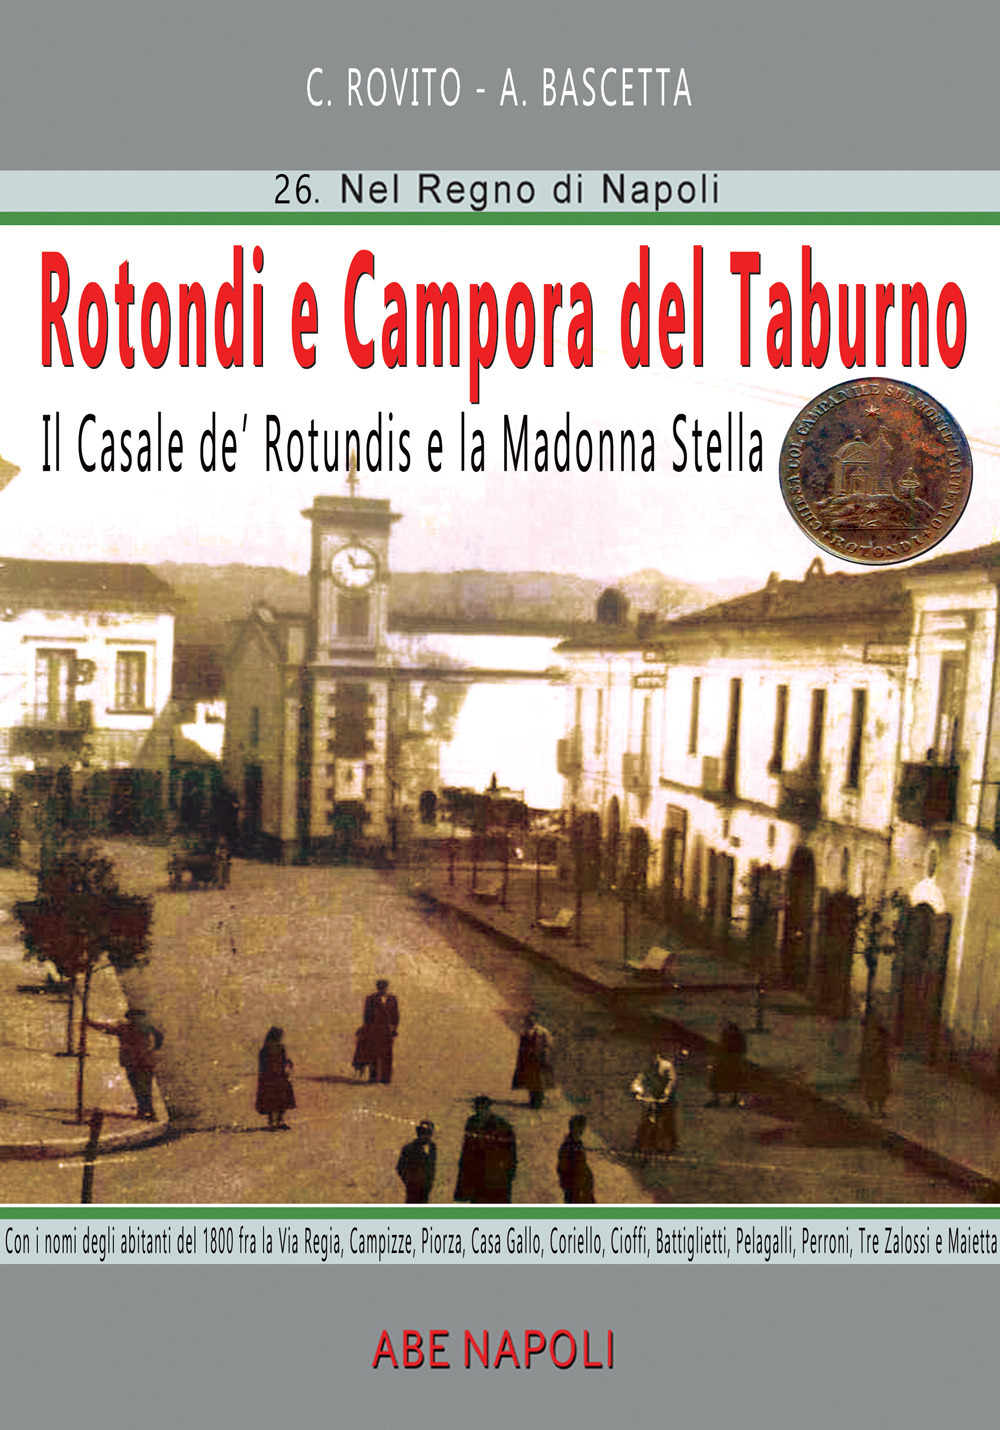 Rotondi e Campora del Taburno: il casale de Rotundis e la Madonna Stella. Con nomi e luoghi, da Casa Gallo a Pelagalli, Peroni, Tre Zalossi e Maietta